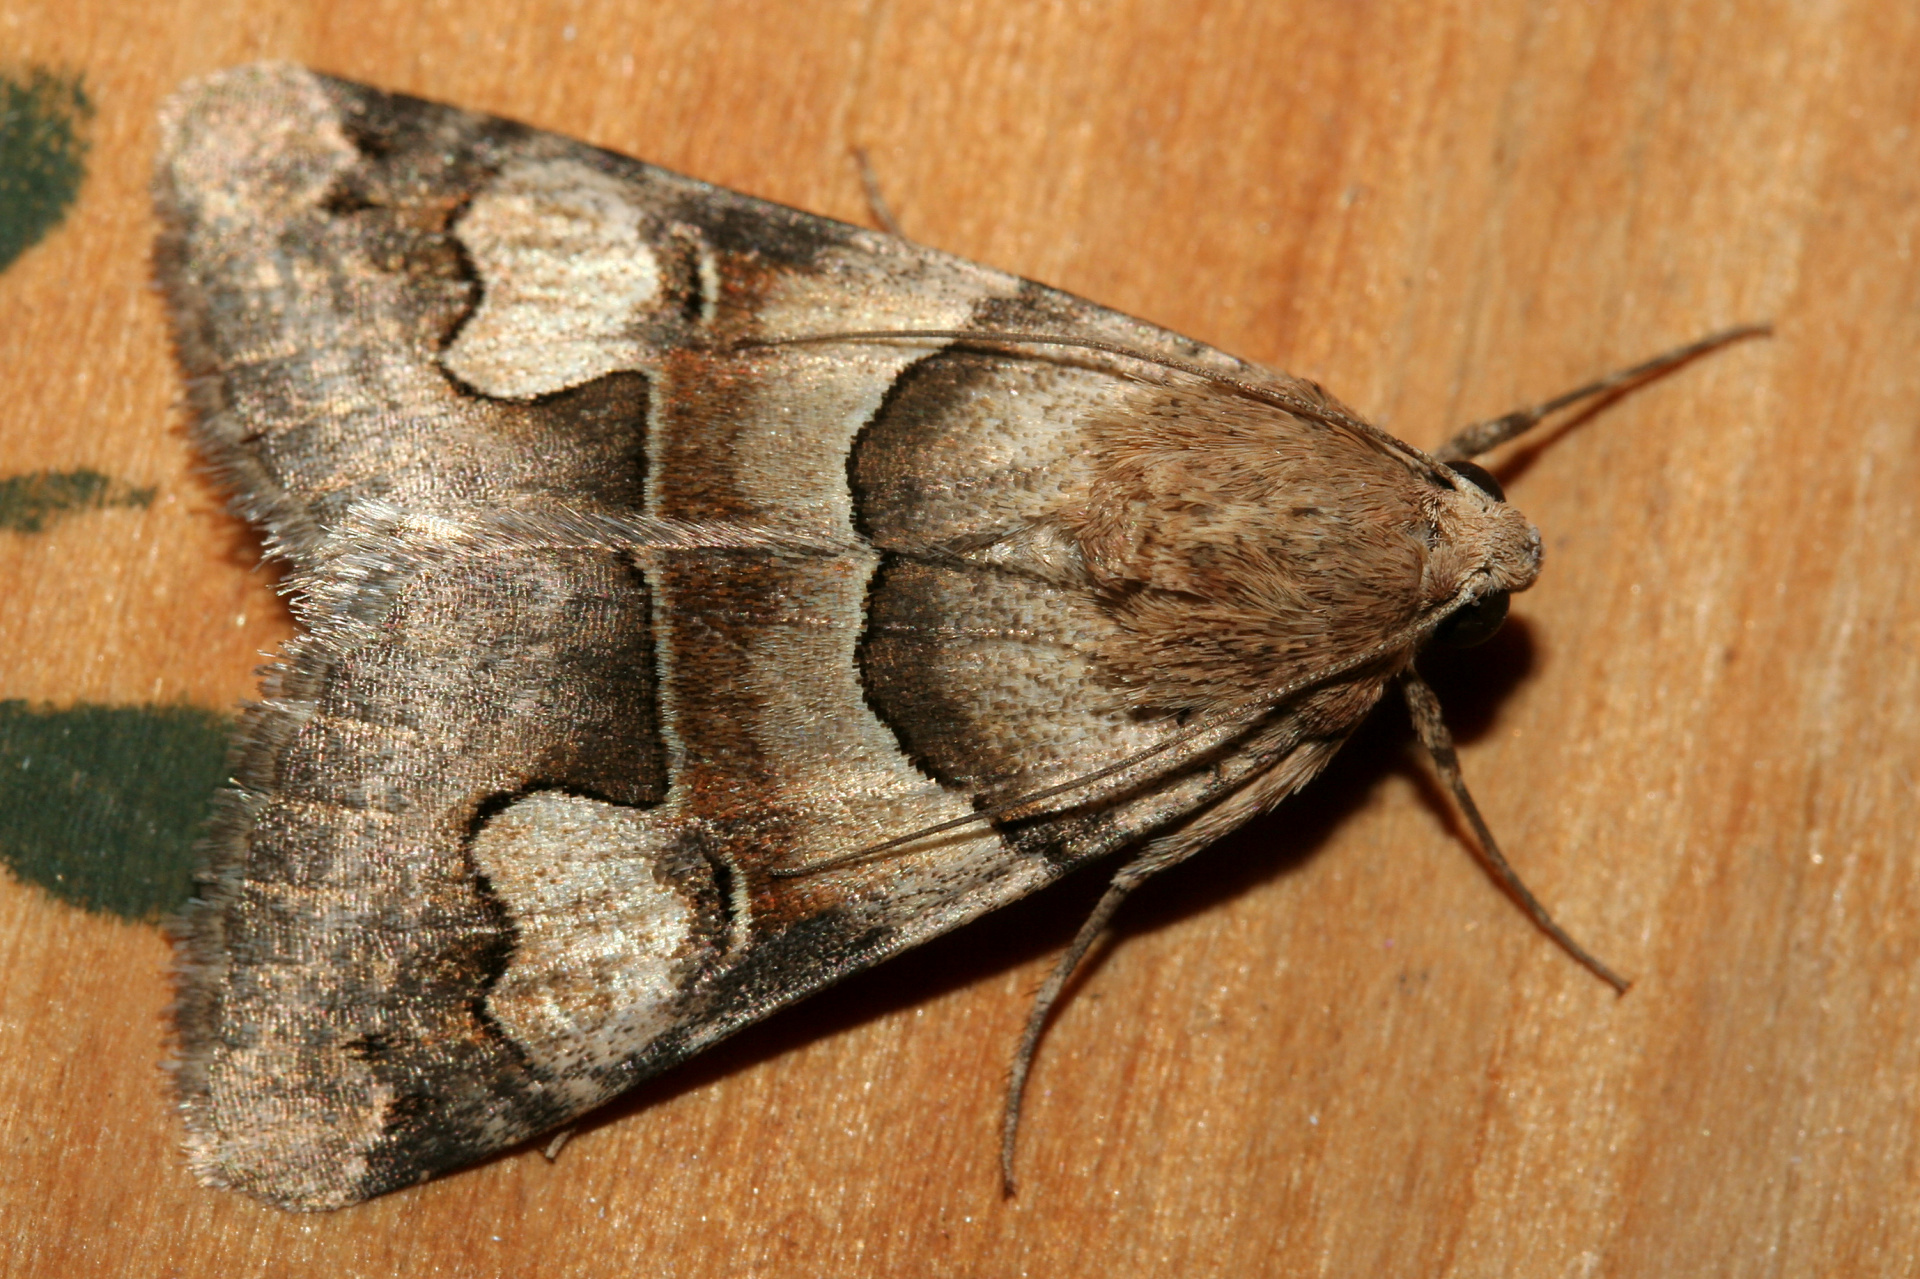 Drasteria pallescens (Podróże » USA: Epopeja Czejeńska » Zwierzęta » Owady » Motyle i ćmy » Noctuidae)